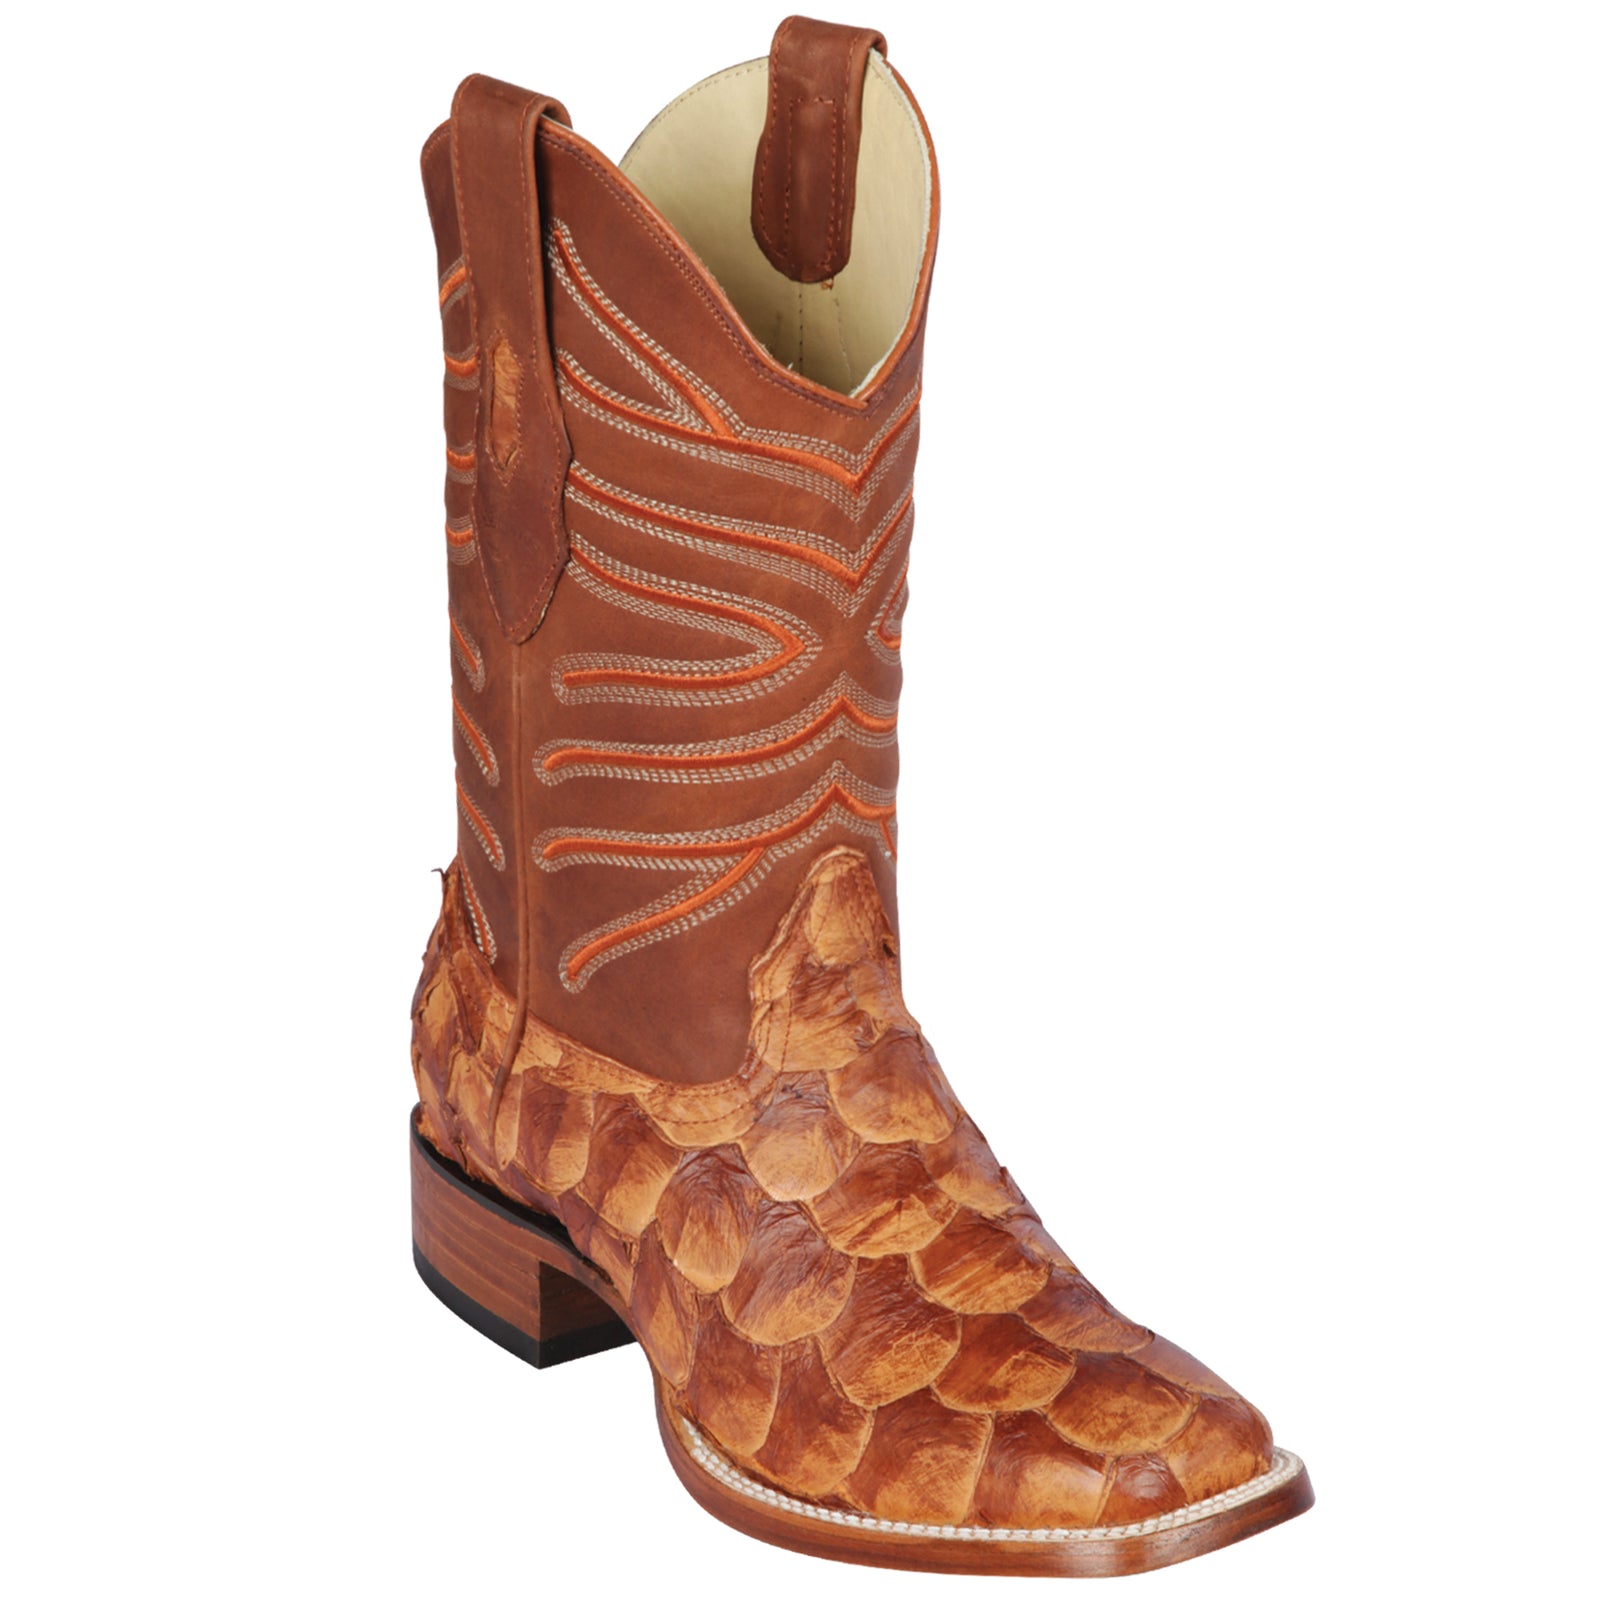 pirarucu boots for sale